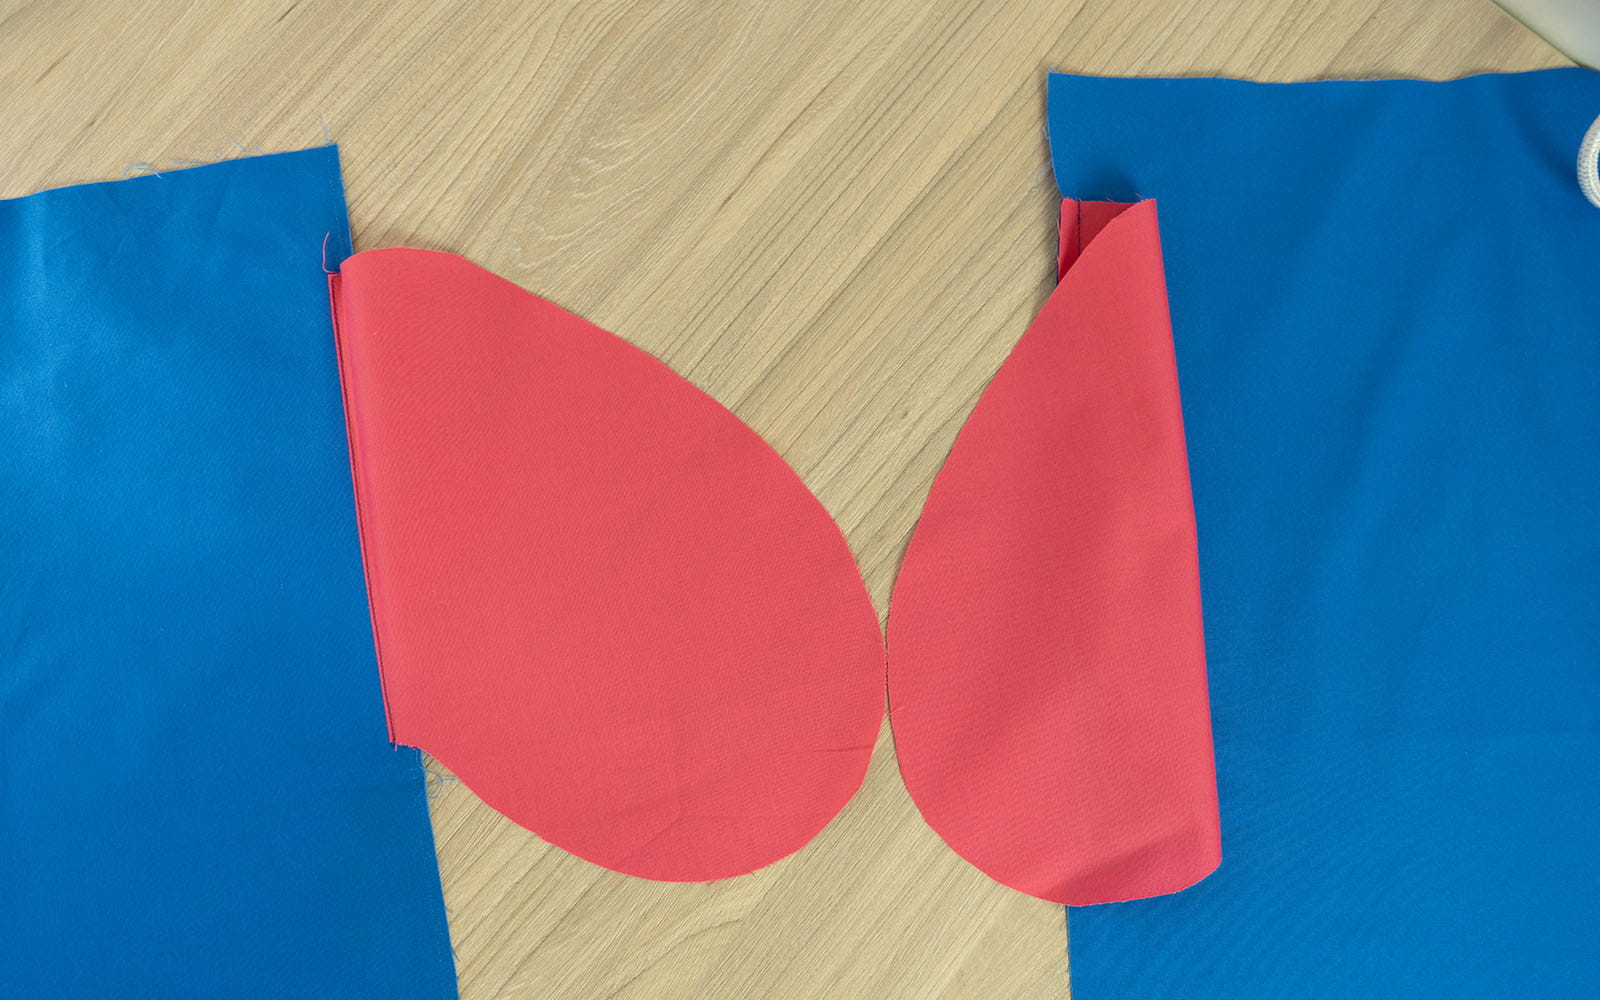 2 roze zakken vastgenaaid aan blauwe stof op houten ondergrond 